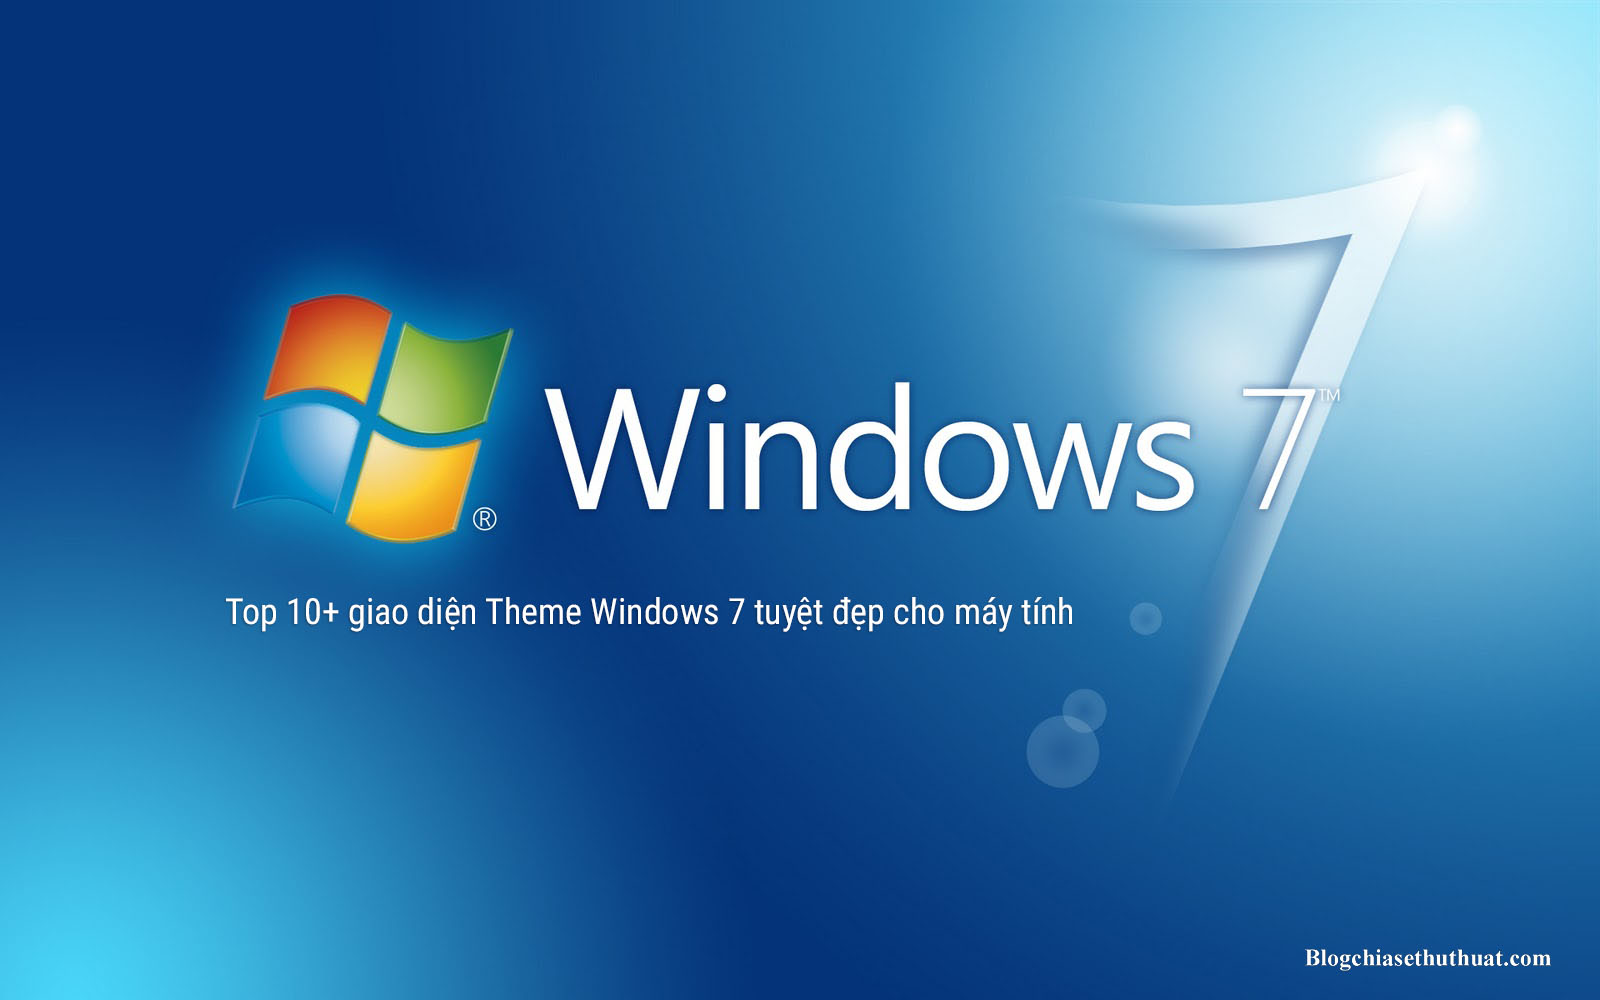 Top 10+ giao diện Theme Windows 7 tuyệt đẹp cho máy tính